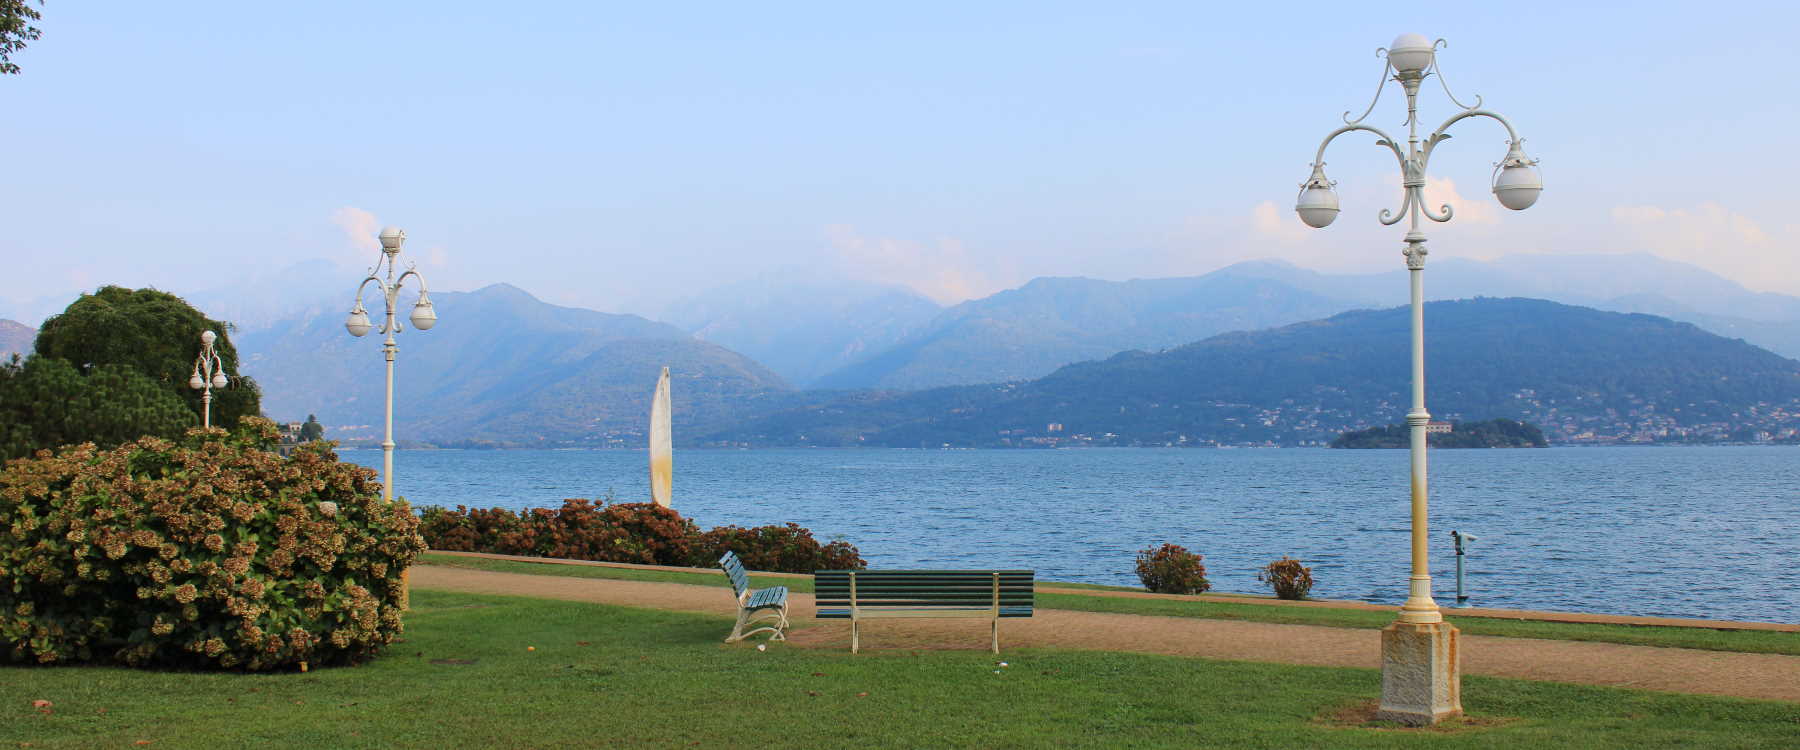 Vorschaubild der Fotografie des Lago Maggiore 2022 von Gabriele Romano